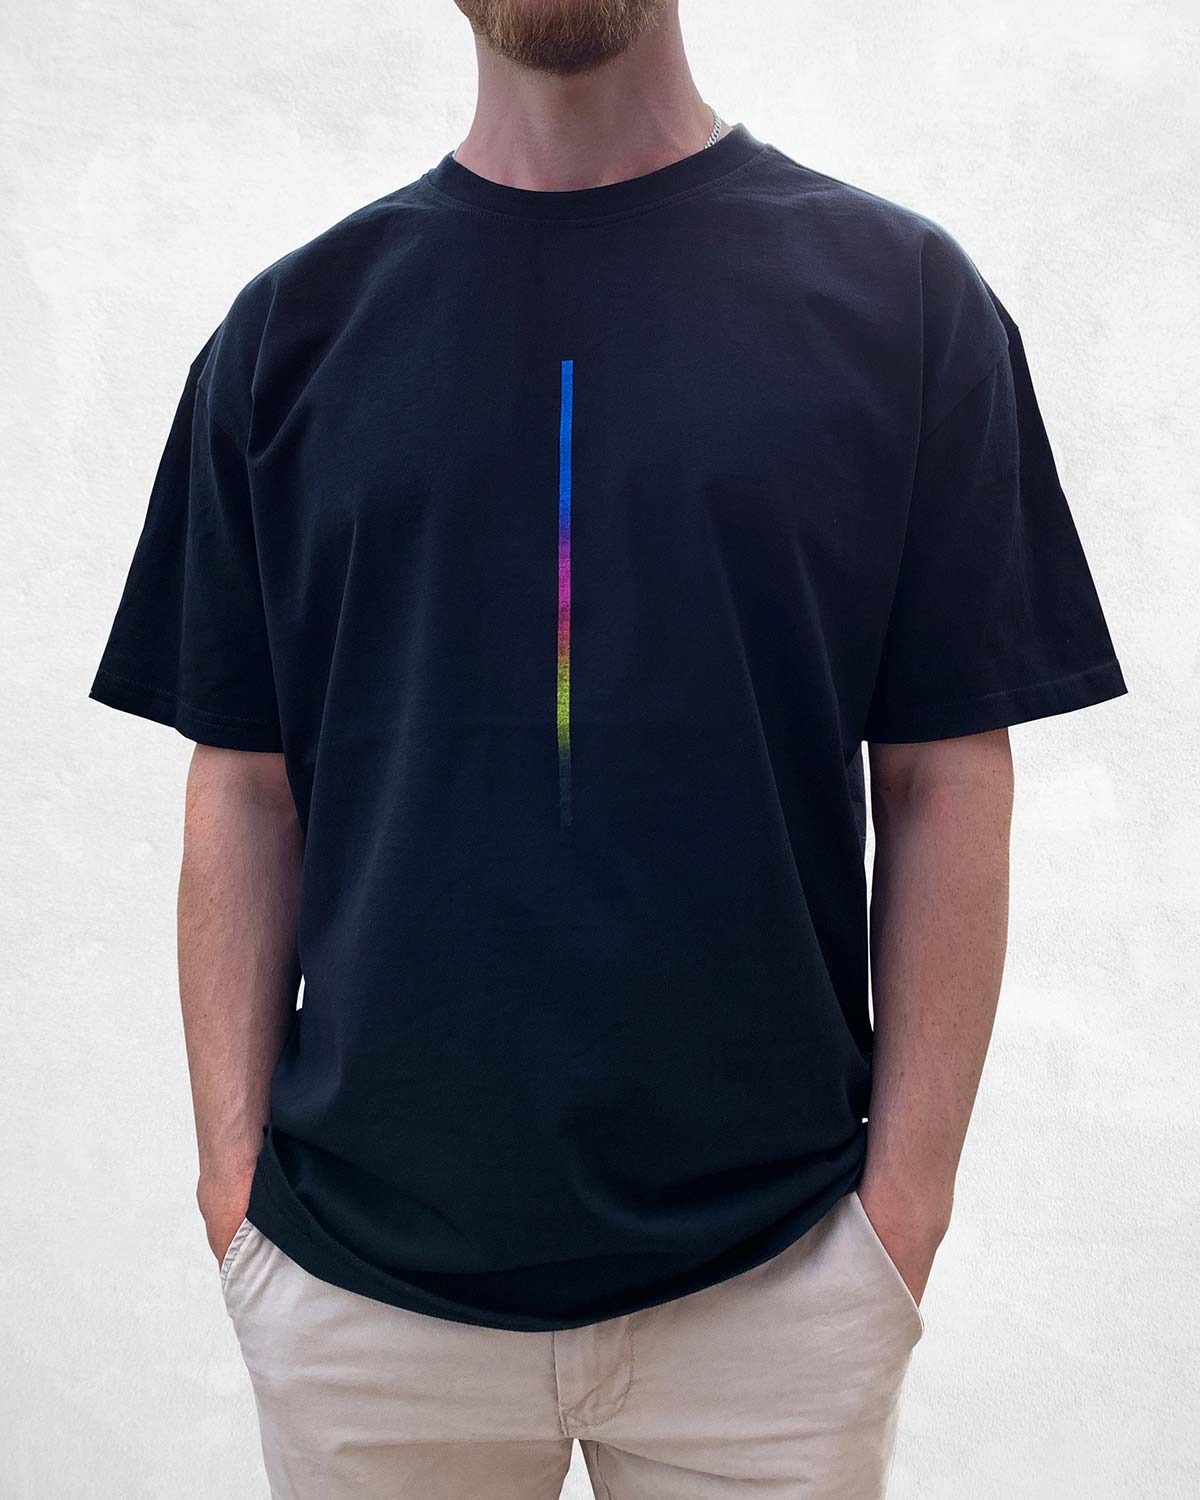 CMYK Dots: Ahorn - T-Shirt - Oversize-Passform - salzig berlin